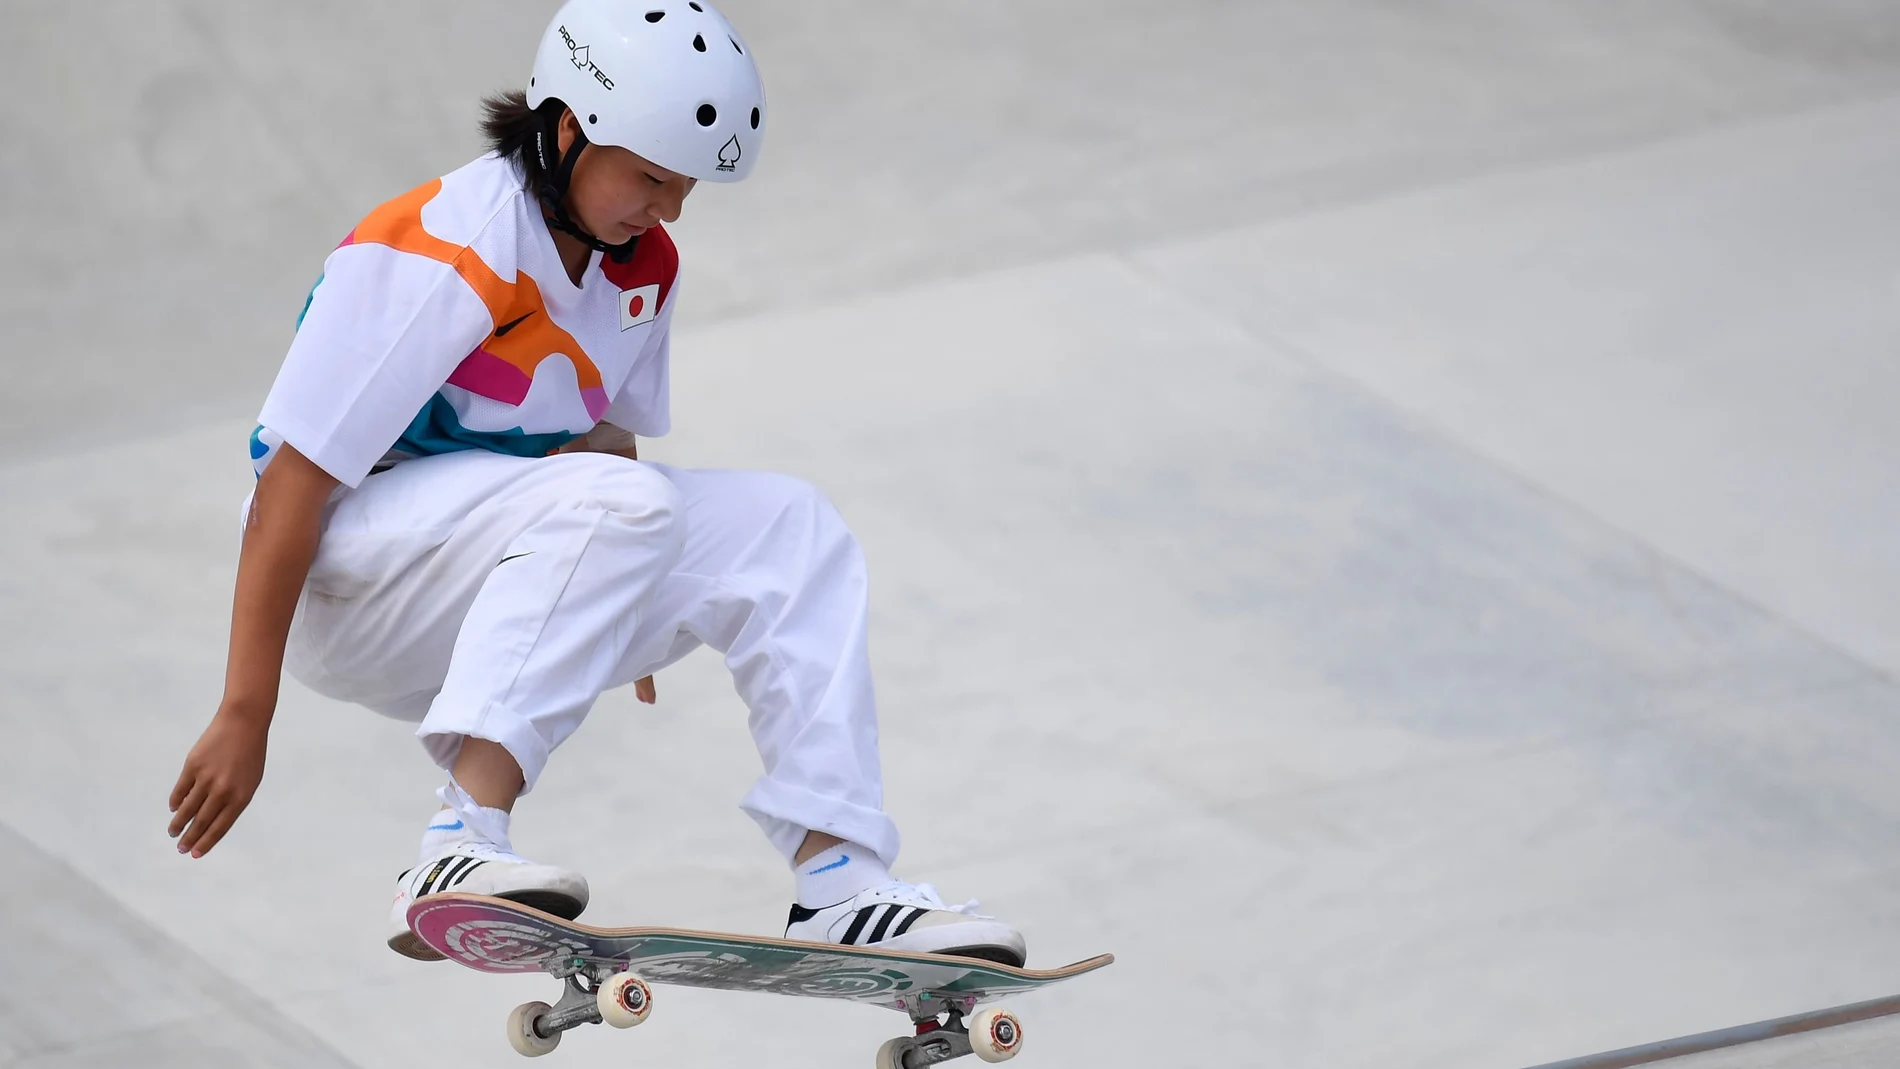 Momiji Nishiya, campeona olímpica con 13 años